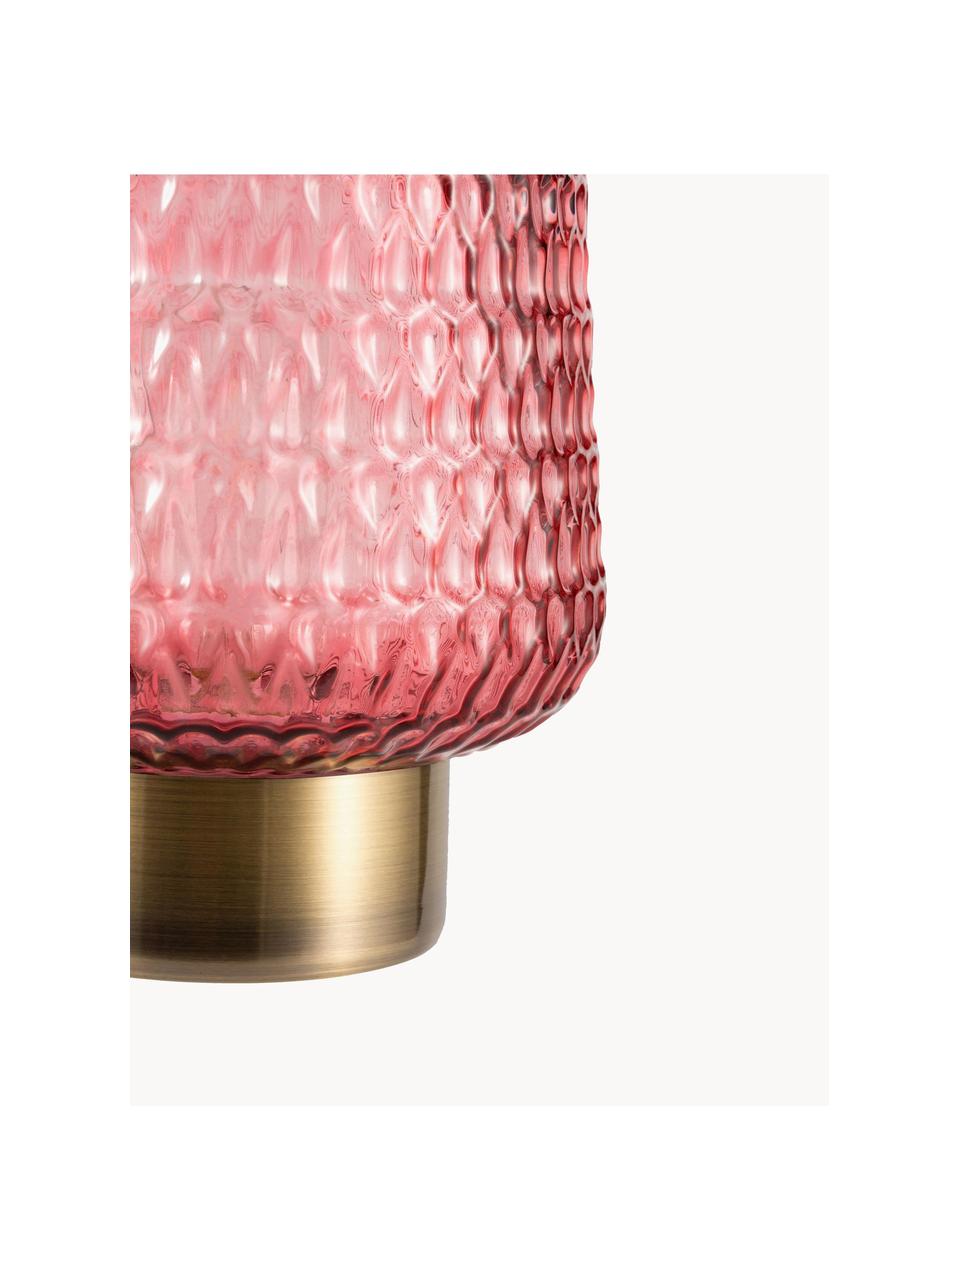 Malá přenosná stolní LED lampa s funkcí časovače Pretty Glamour, Sklo,kov, Růžová, zlatá, Ø 16 cm, V 21 cm